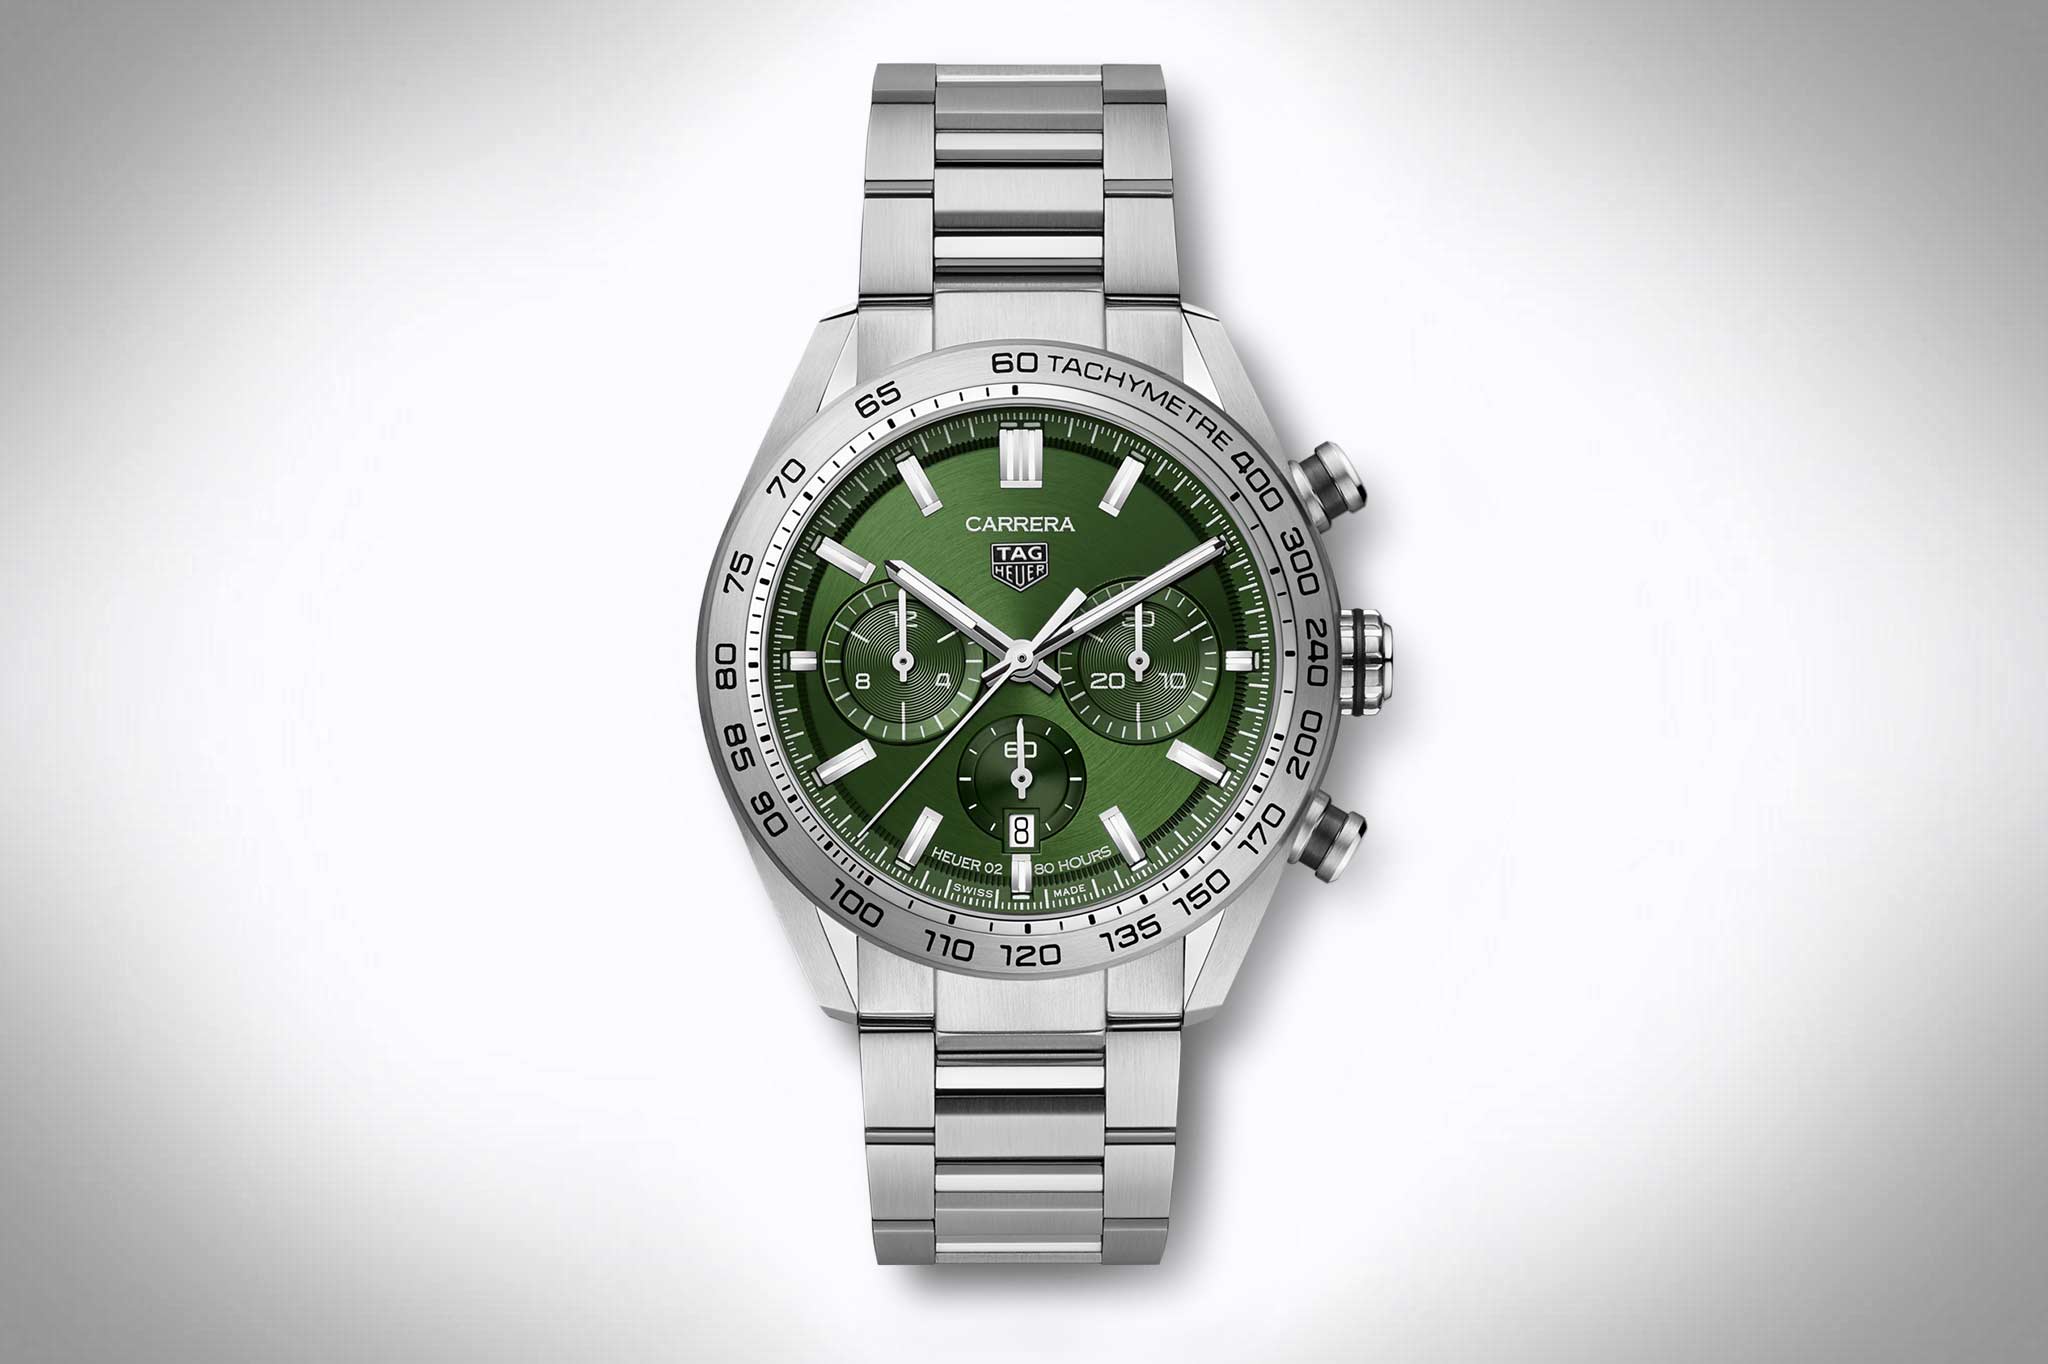  Liste der besten Uhr grünes zifferblatt